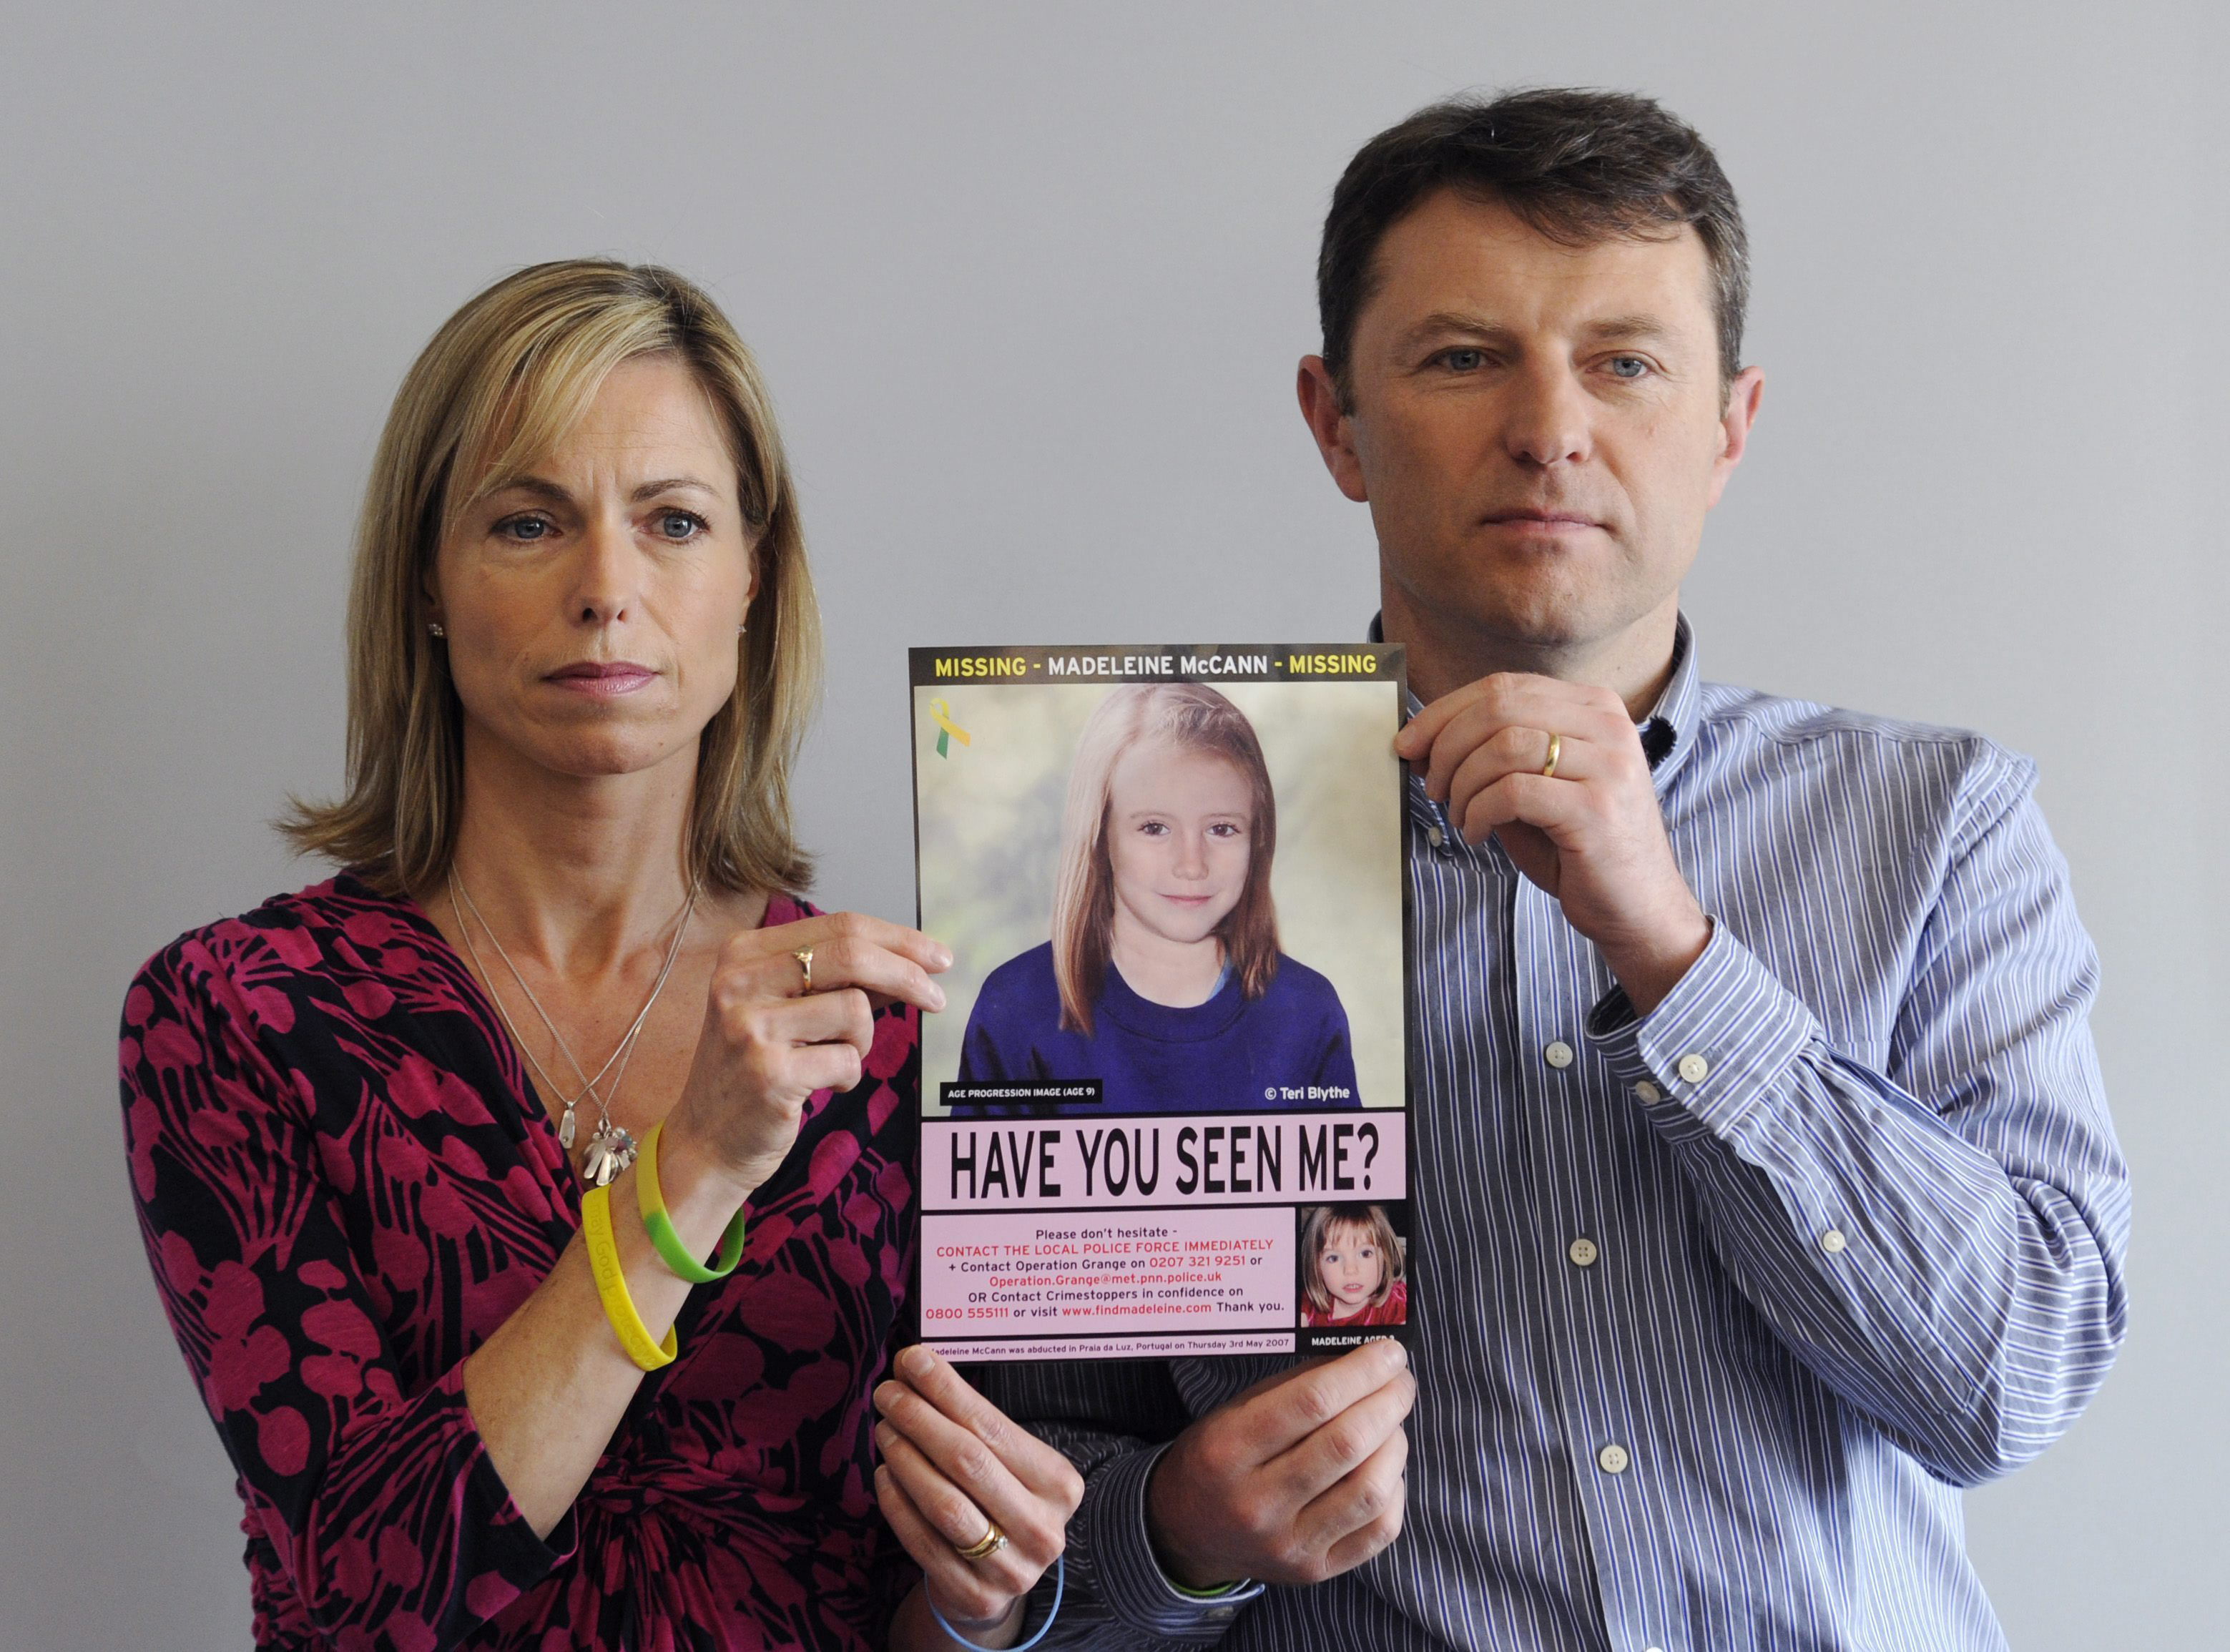 La policía británica identifica a tres sospechosos del secuestro de Madeleine McCann